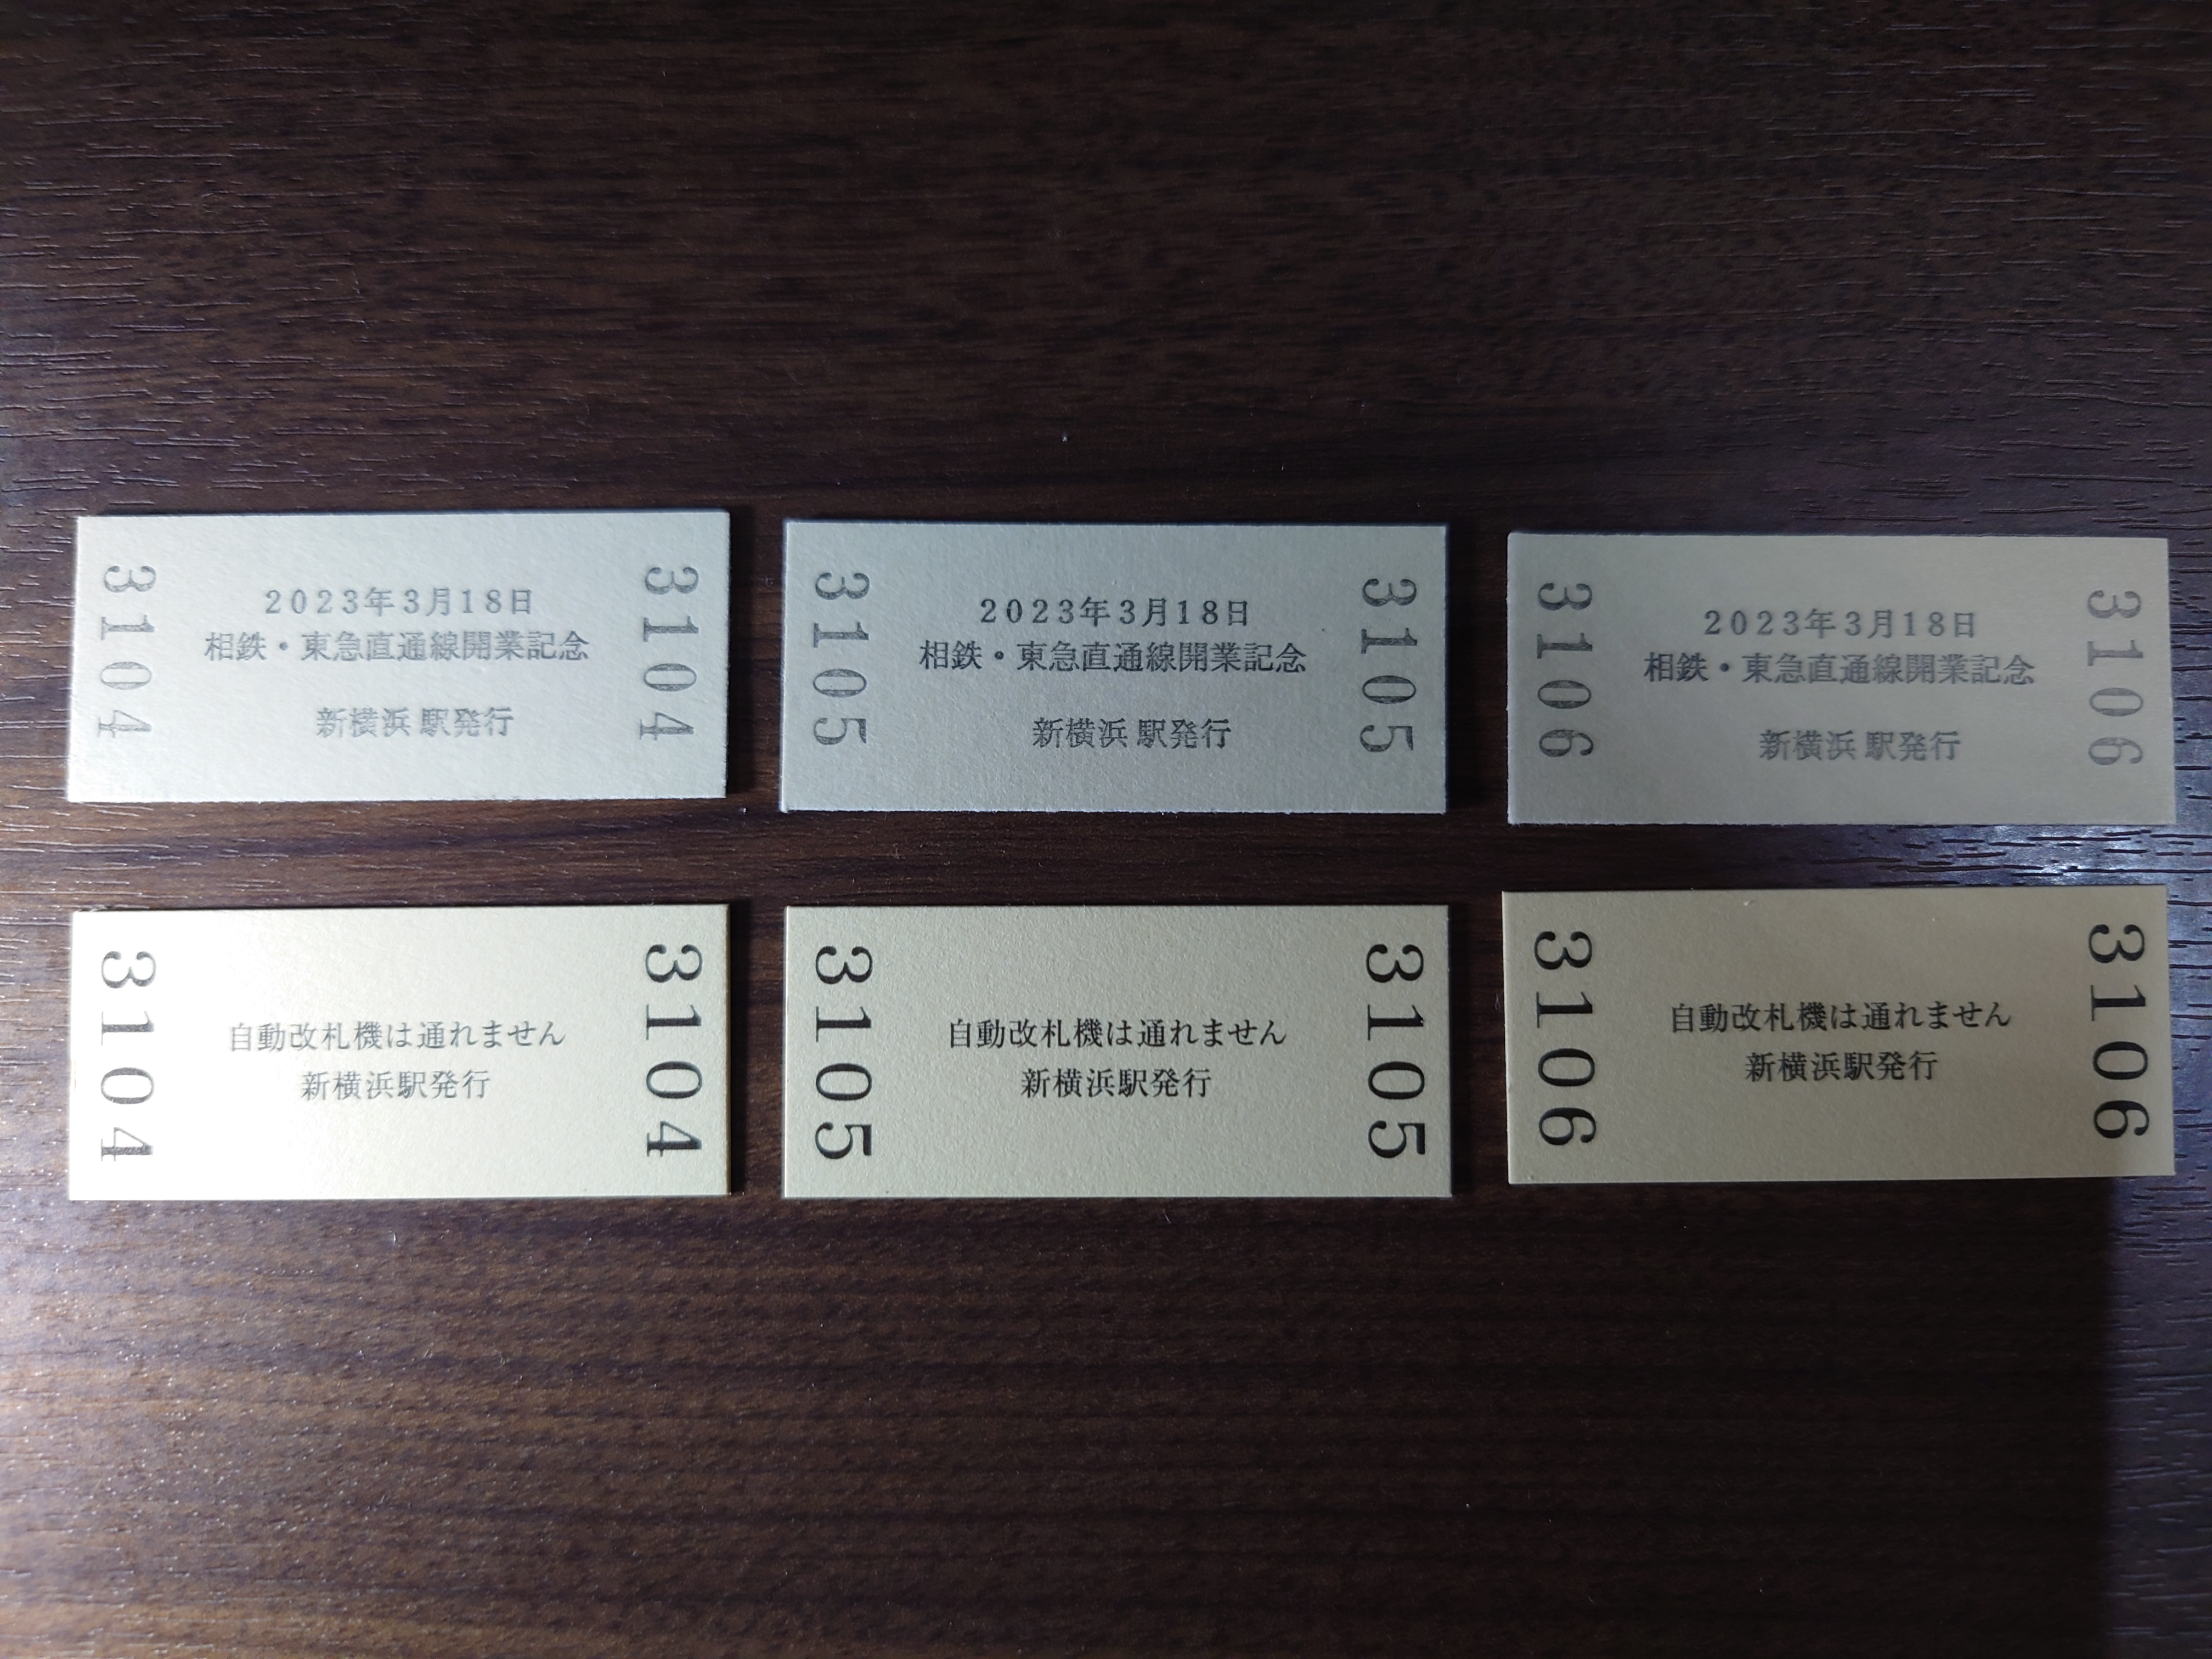 新横浜駅の入場券を3つずつ並べた様子（裏面）